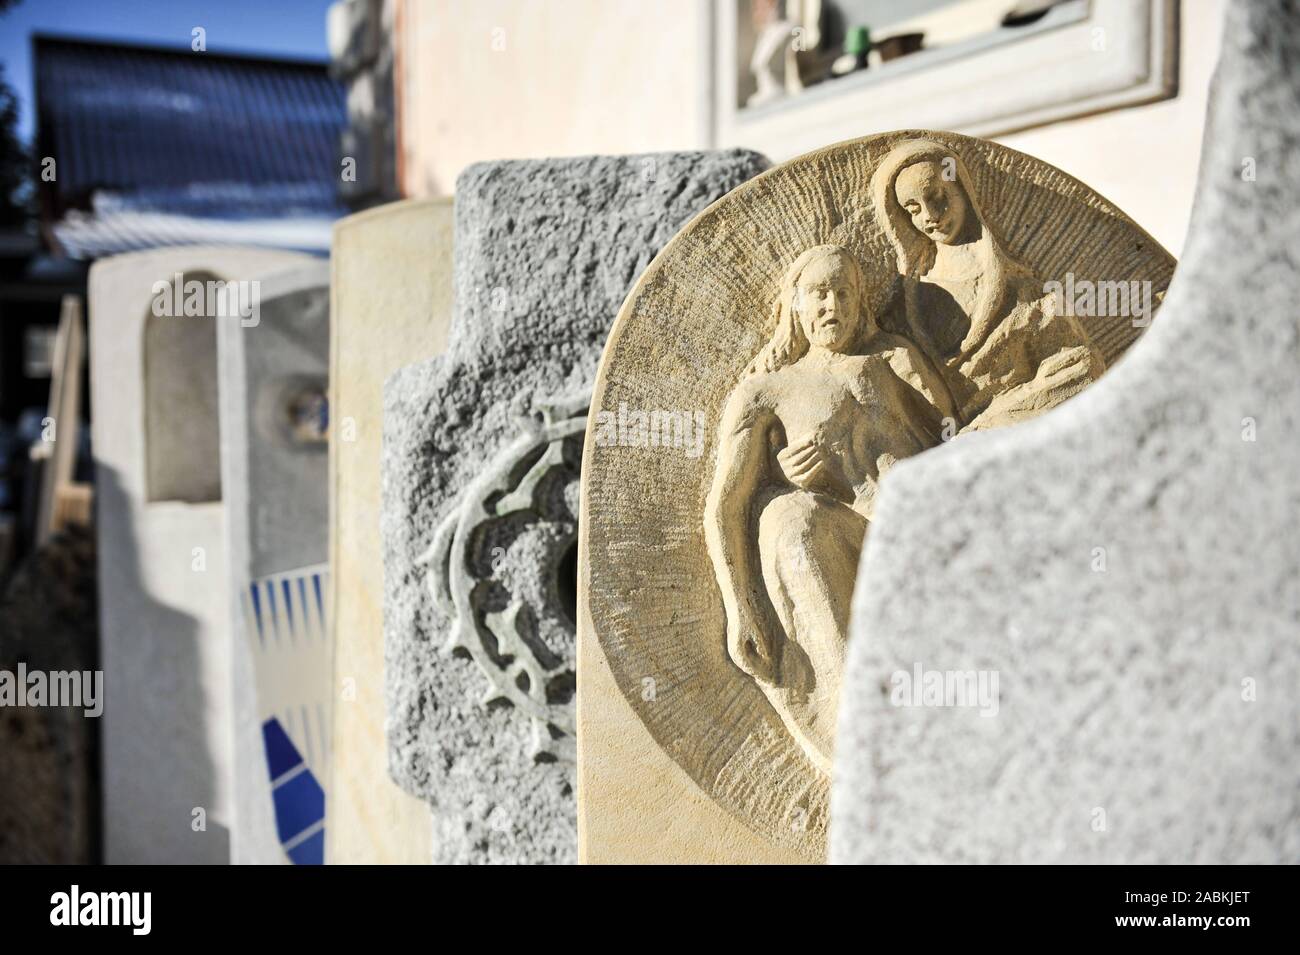 Eine Sammlung von grabsteinen der Steinbildhauer Mario Valdini in München. [Automatisierte Übersetzung] Stockfoto